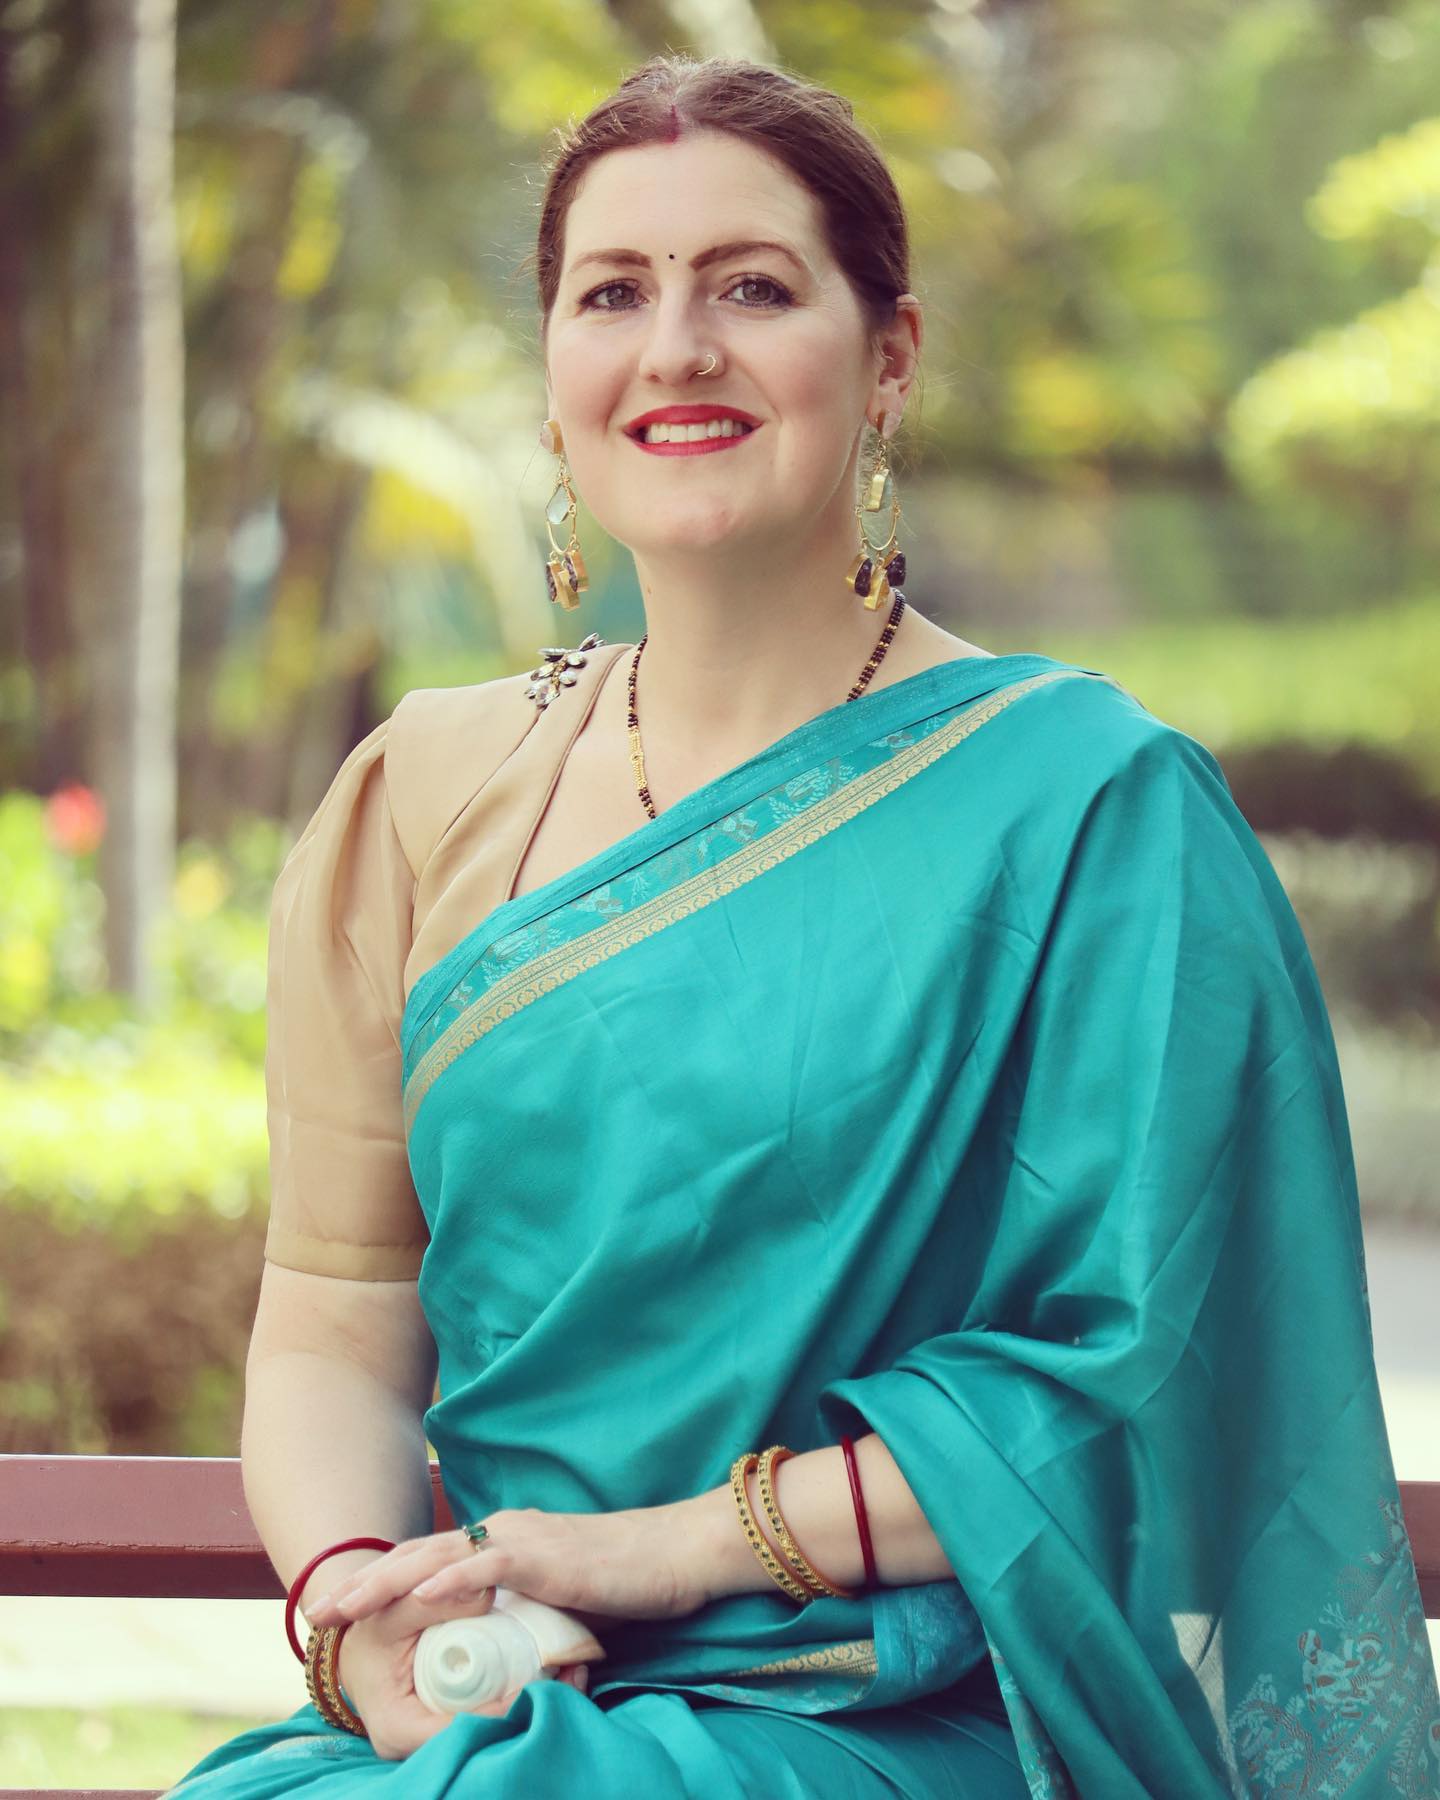 印度侨民 | 杰西卡·库马尔 | 全球印度人